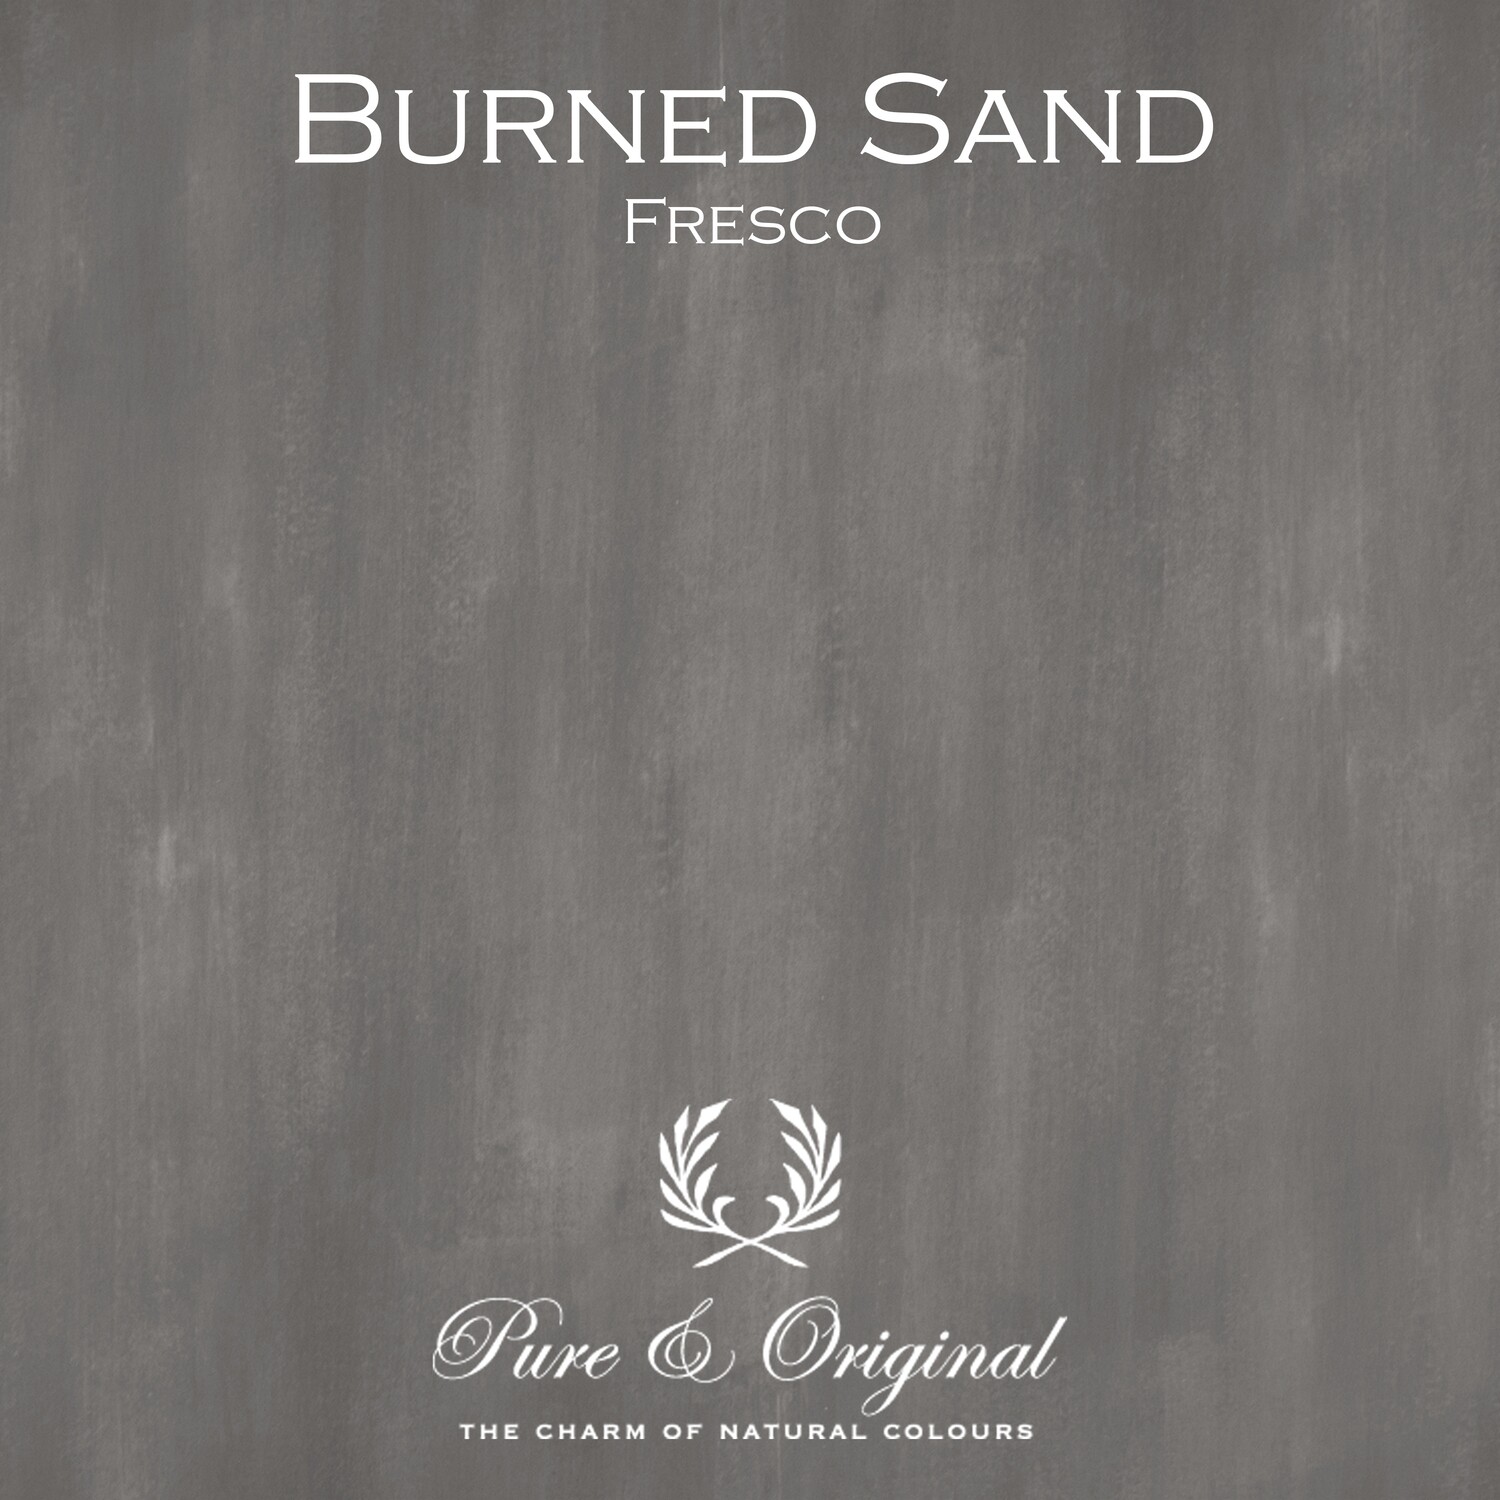 Burned Sand Fresco